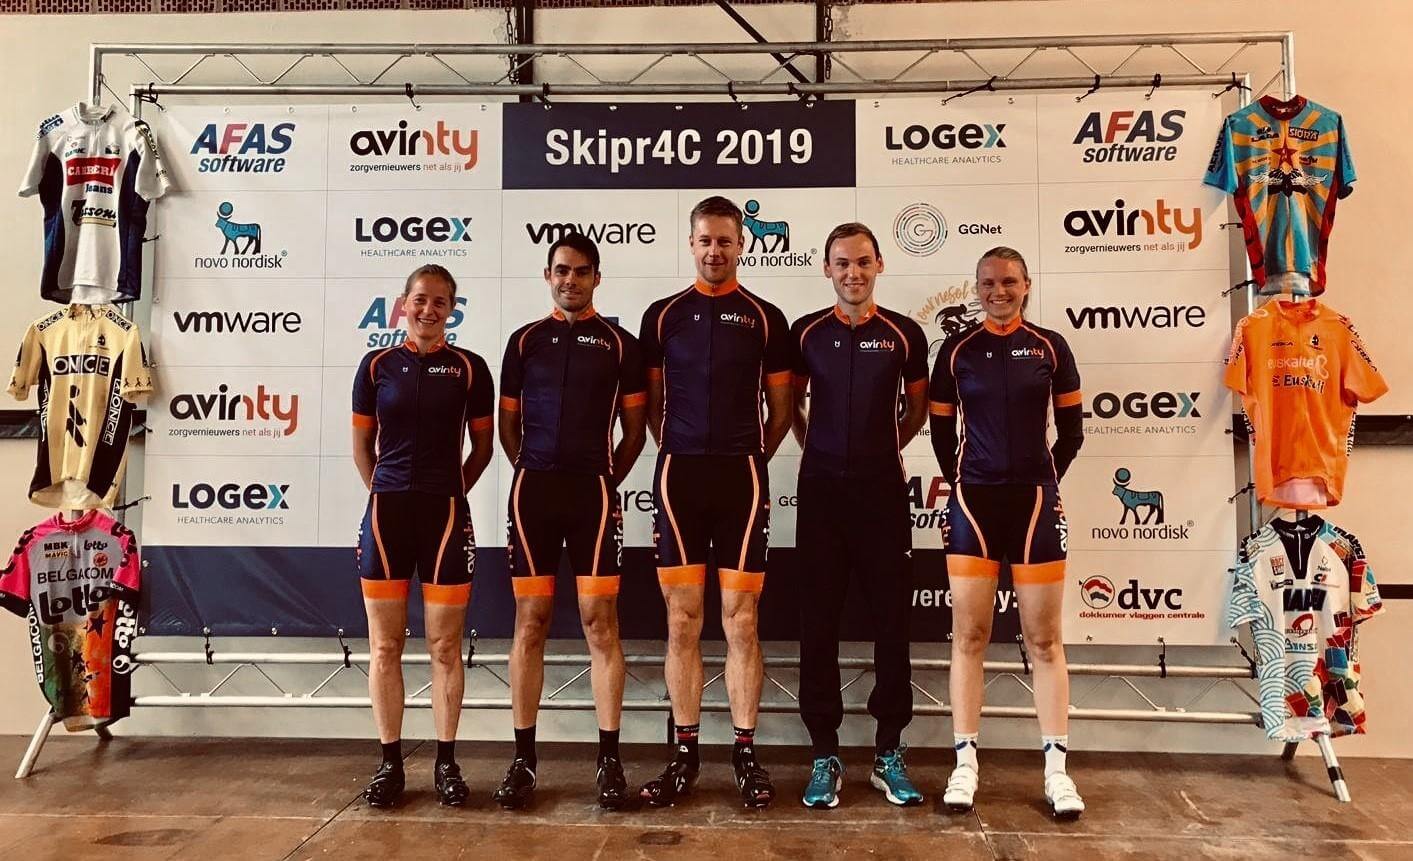 Team Avinty wint ploegentijdrit van Skipr4C 2019 en word gehuldigd op het podium